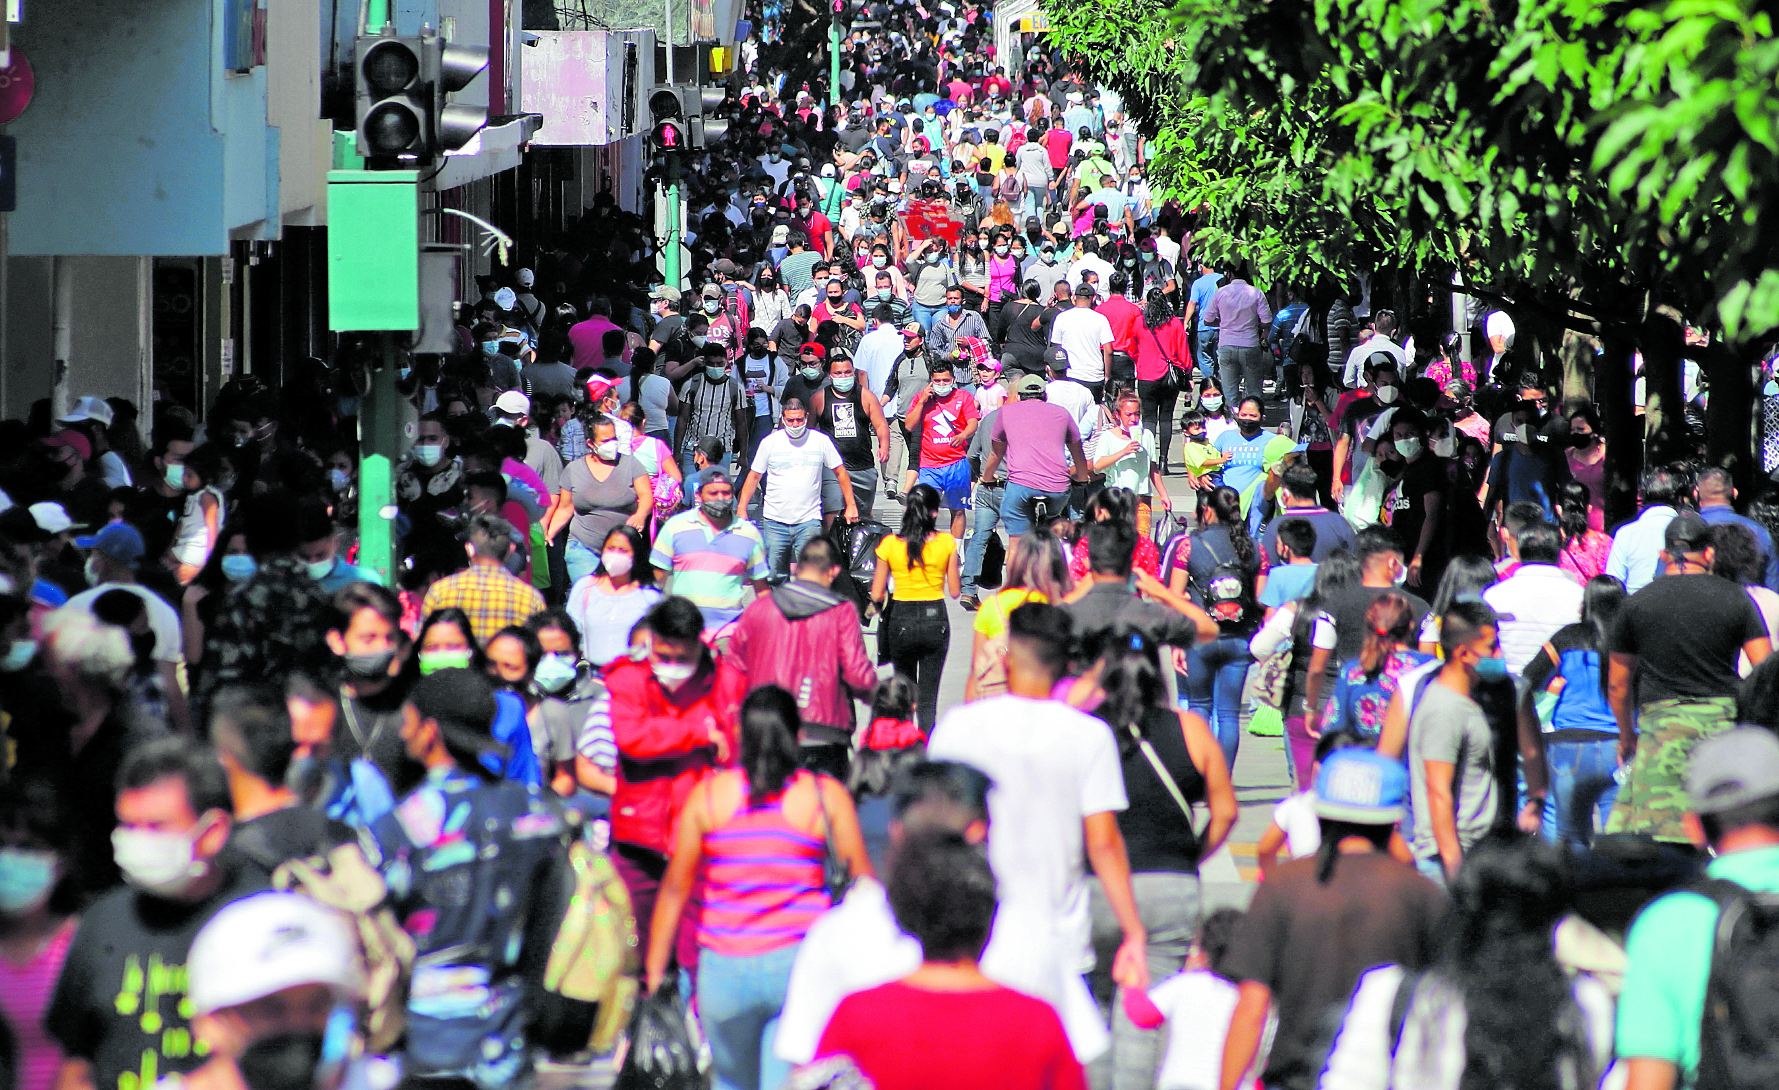 El 75% de la población ha sufrido trastornos de ansiedad provocados por la pandemia del covid-19. (Foto Prensa Libre: Hemeroteca PL)